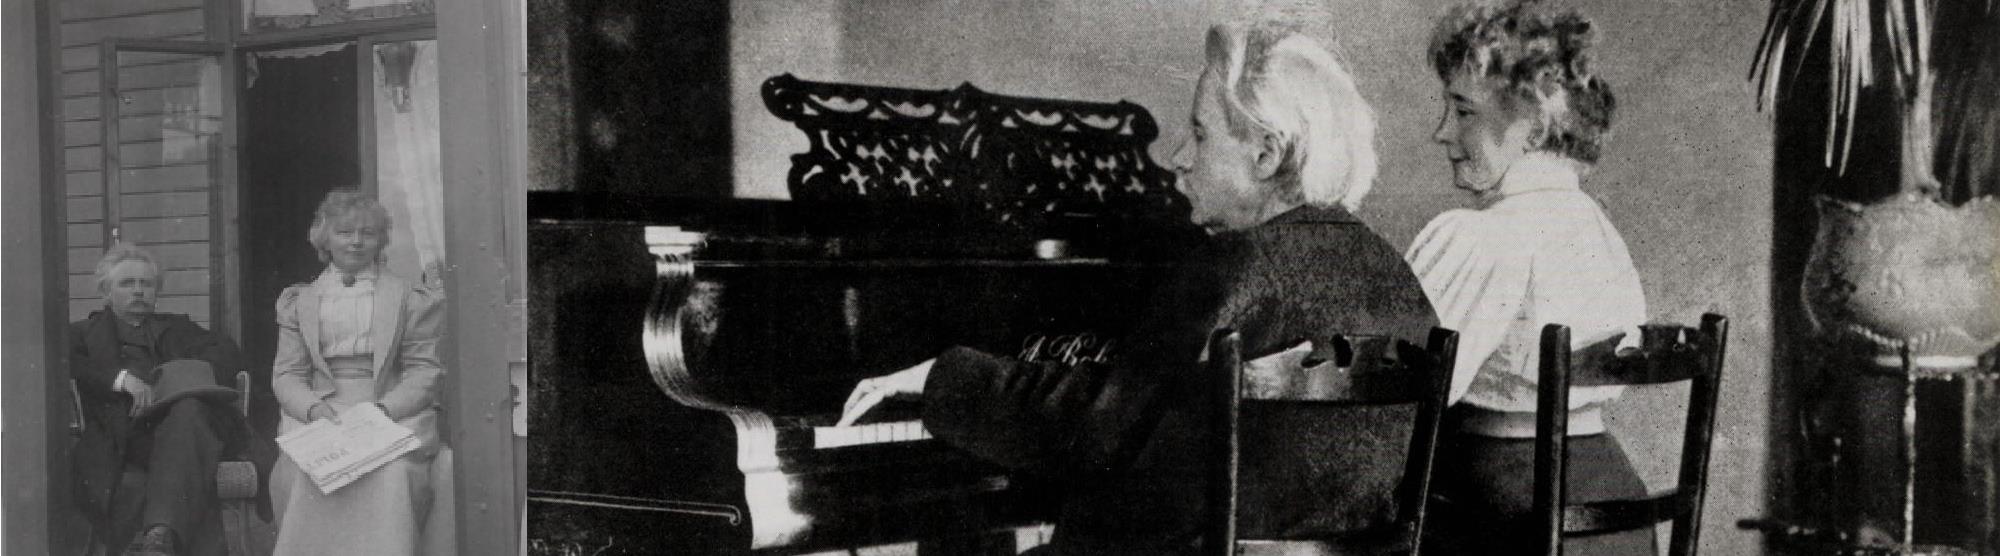 Edvard Grieg musikk